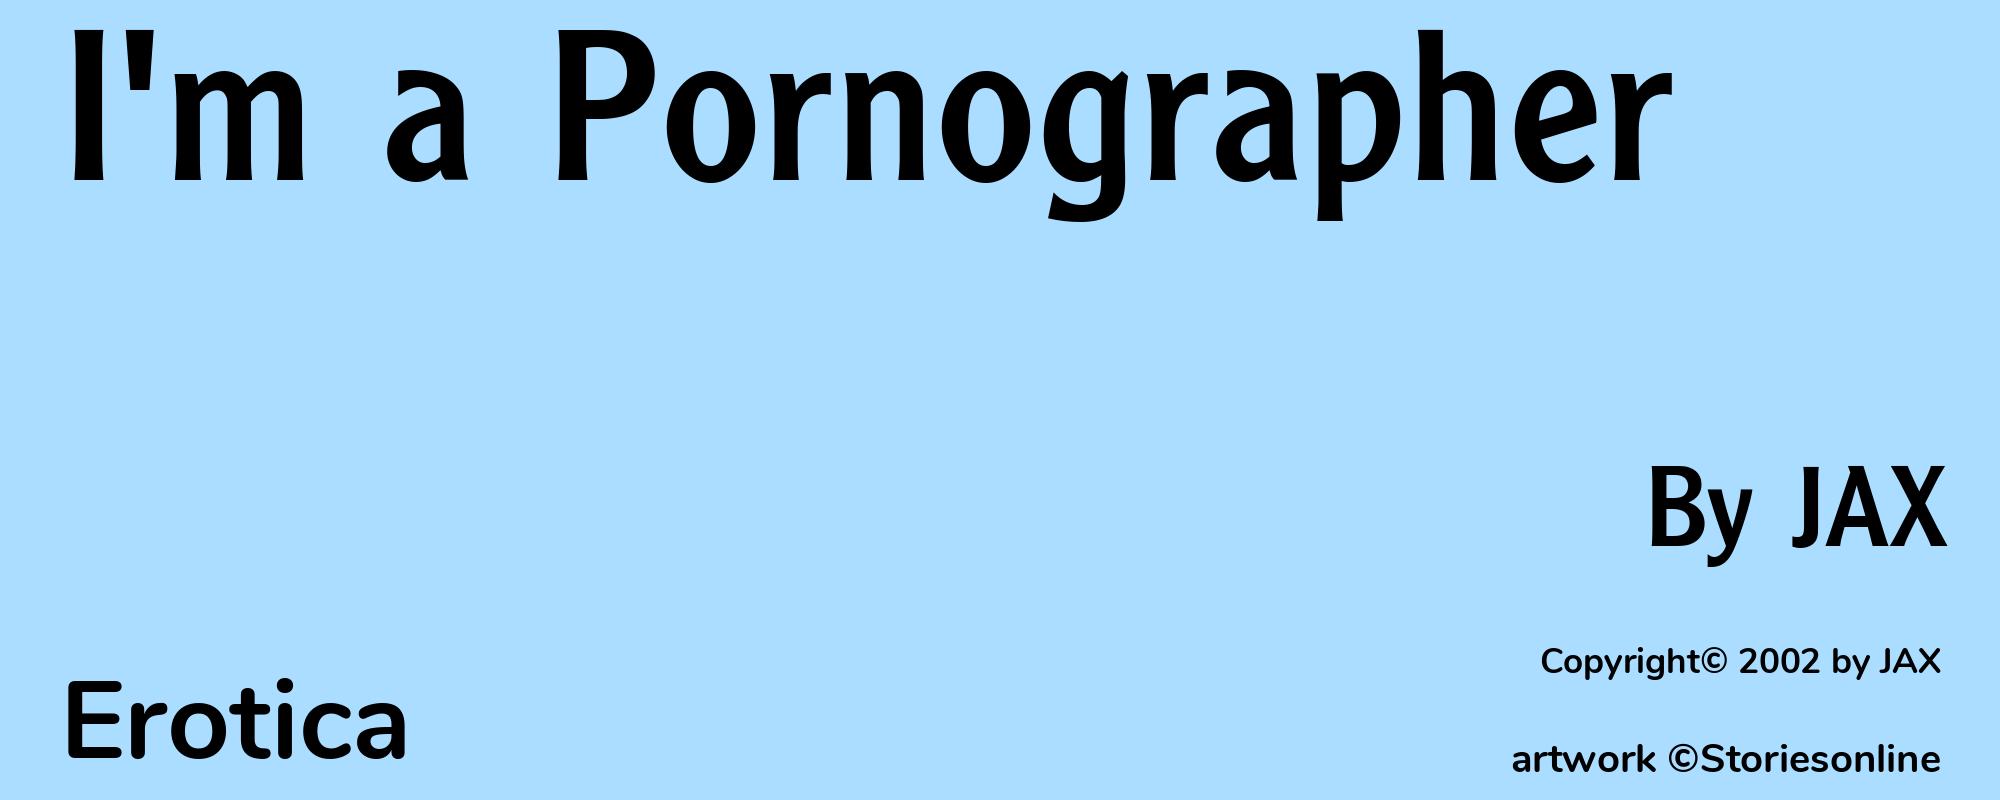 I'm a Pornographer - Cover